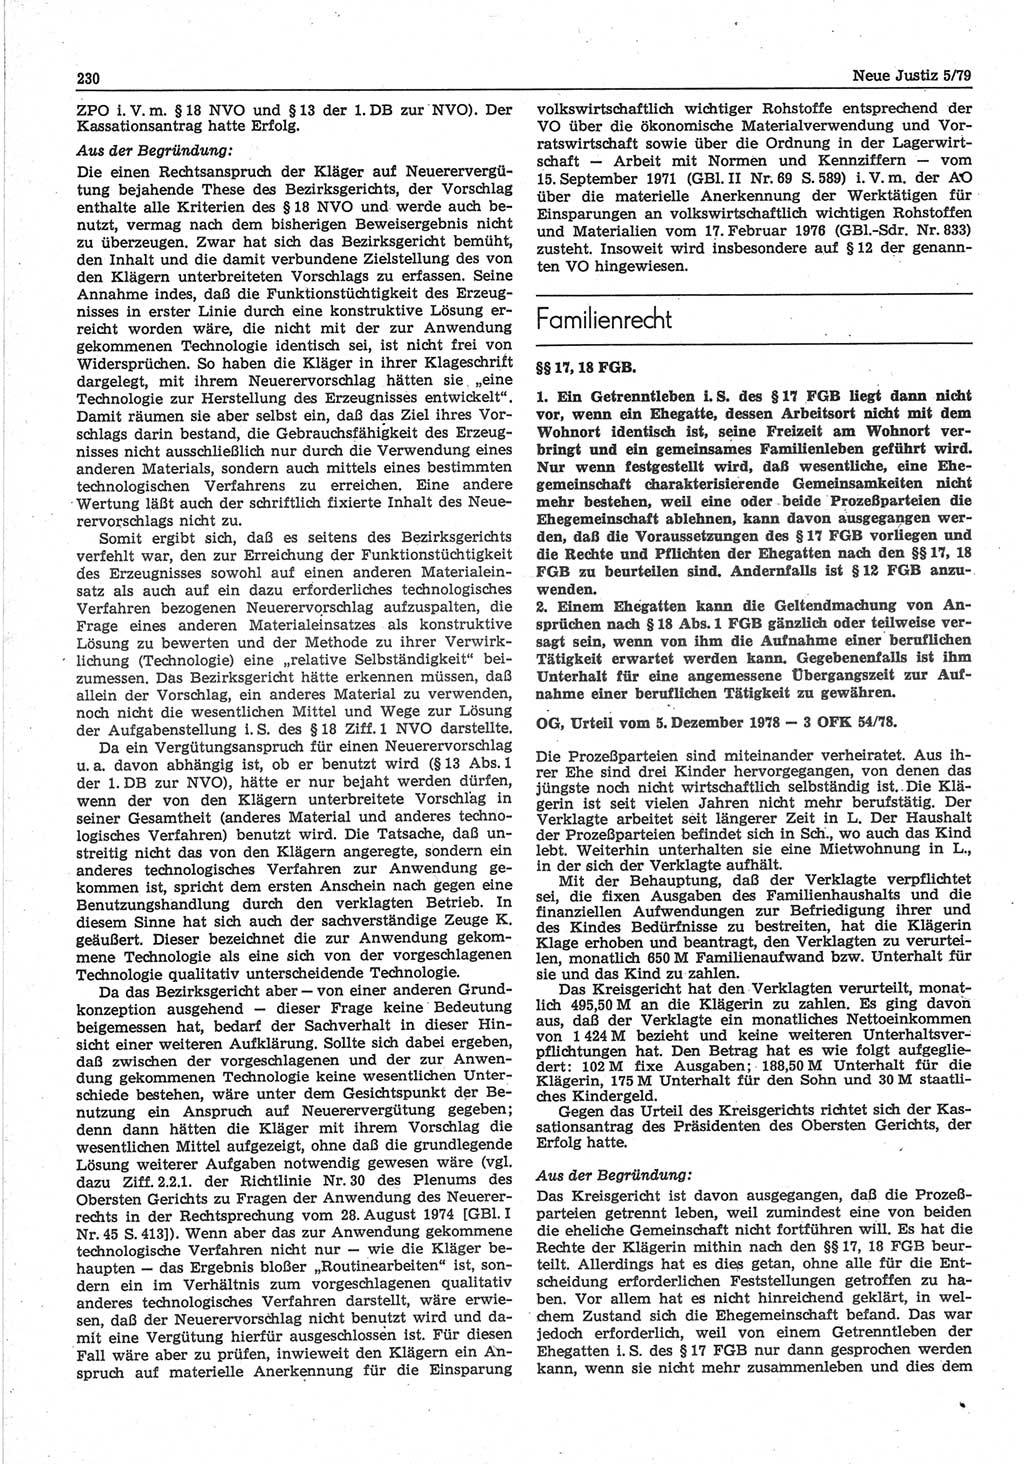 Neue Justiz (NJ), Zeitschrift für sozialistisches Recht und Gesetzlichkeit [Deutsche Demokratische Republik (DDR)], 33. Jahrgang 1979, Seite 230 (NJ DDR 1979, S. 230)